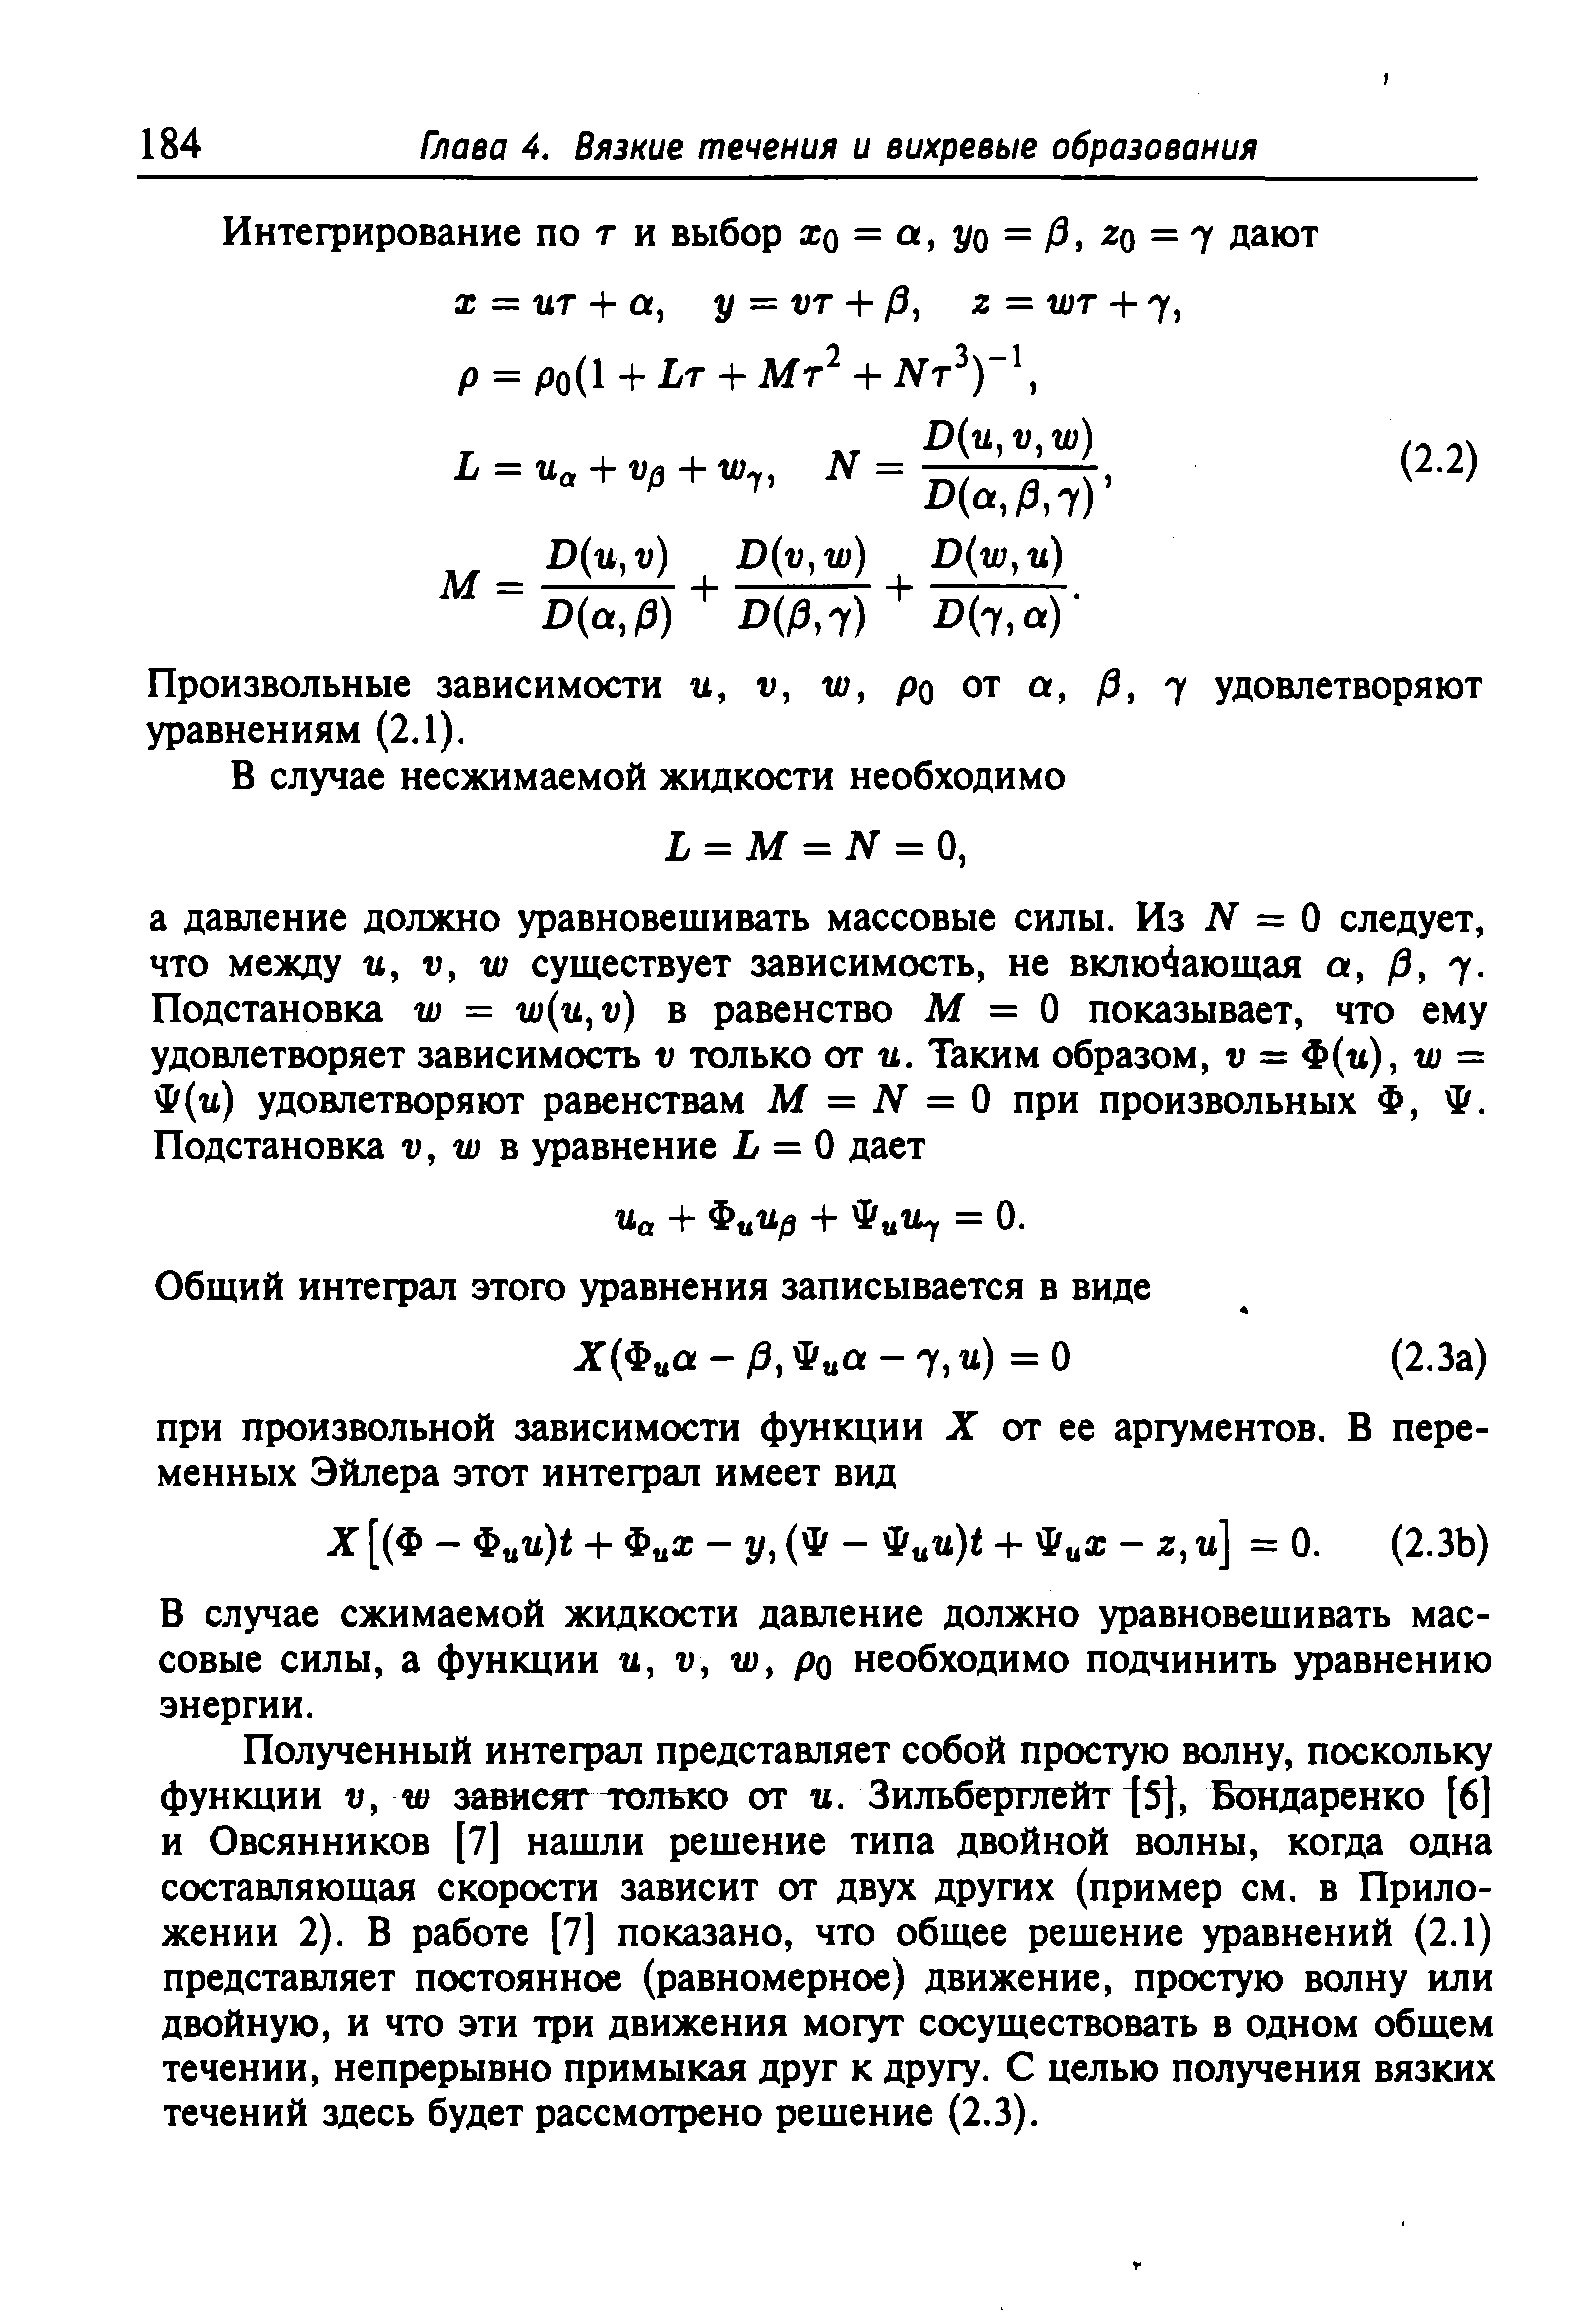 Произвольные зависимости и, v, w, po от P, 7 удовлетворяют уравнениям (2.1).
